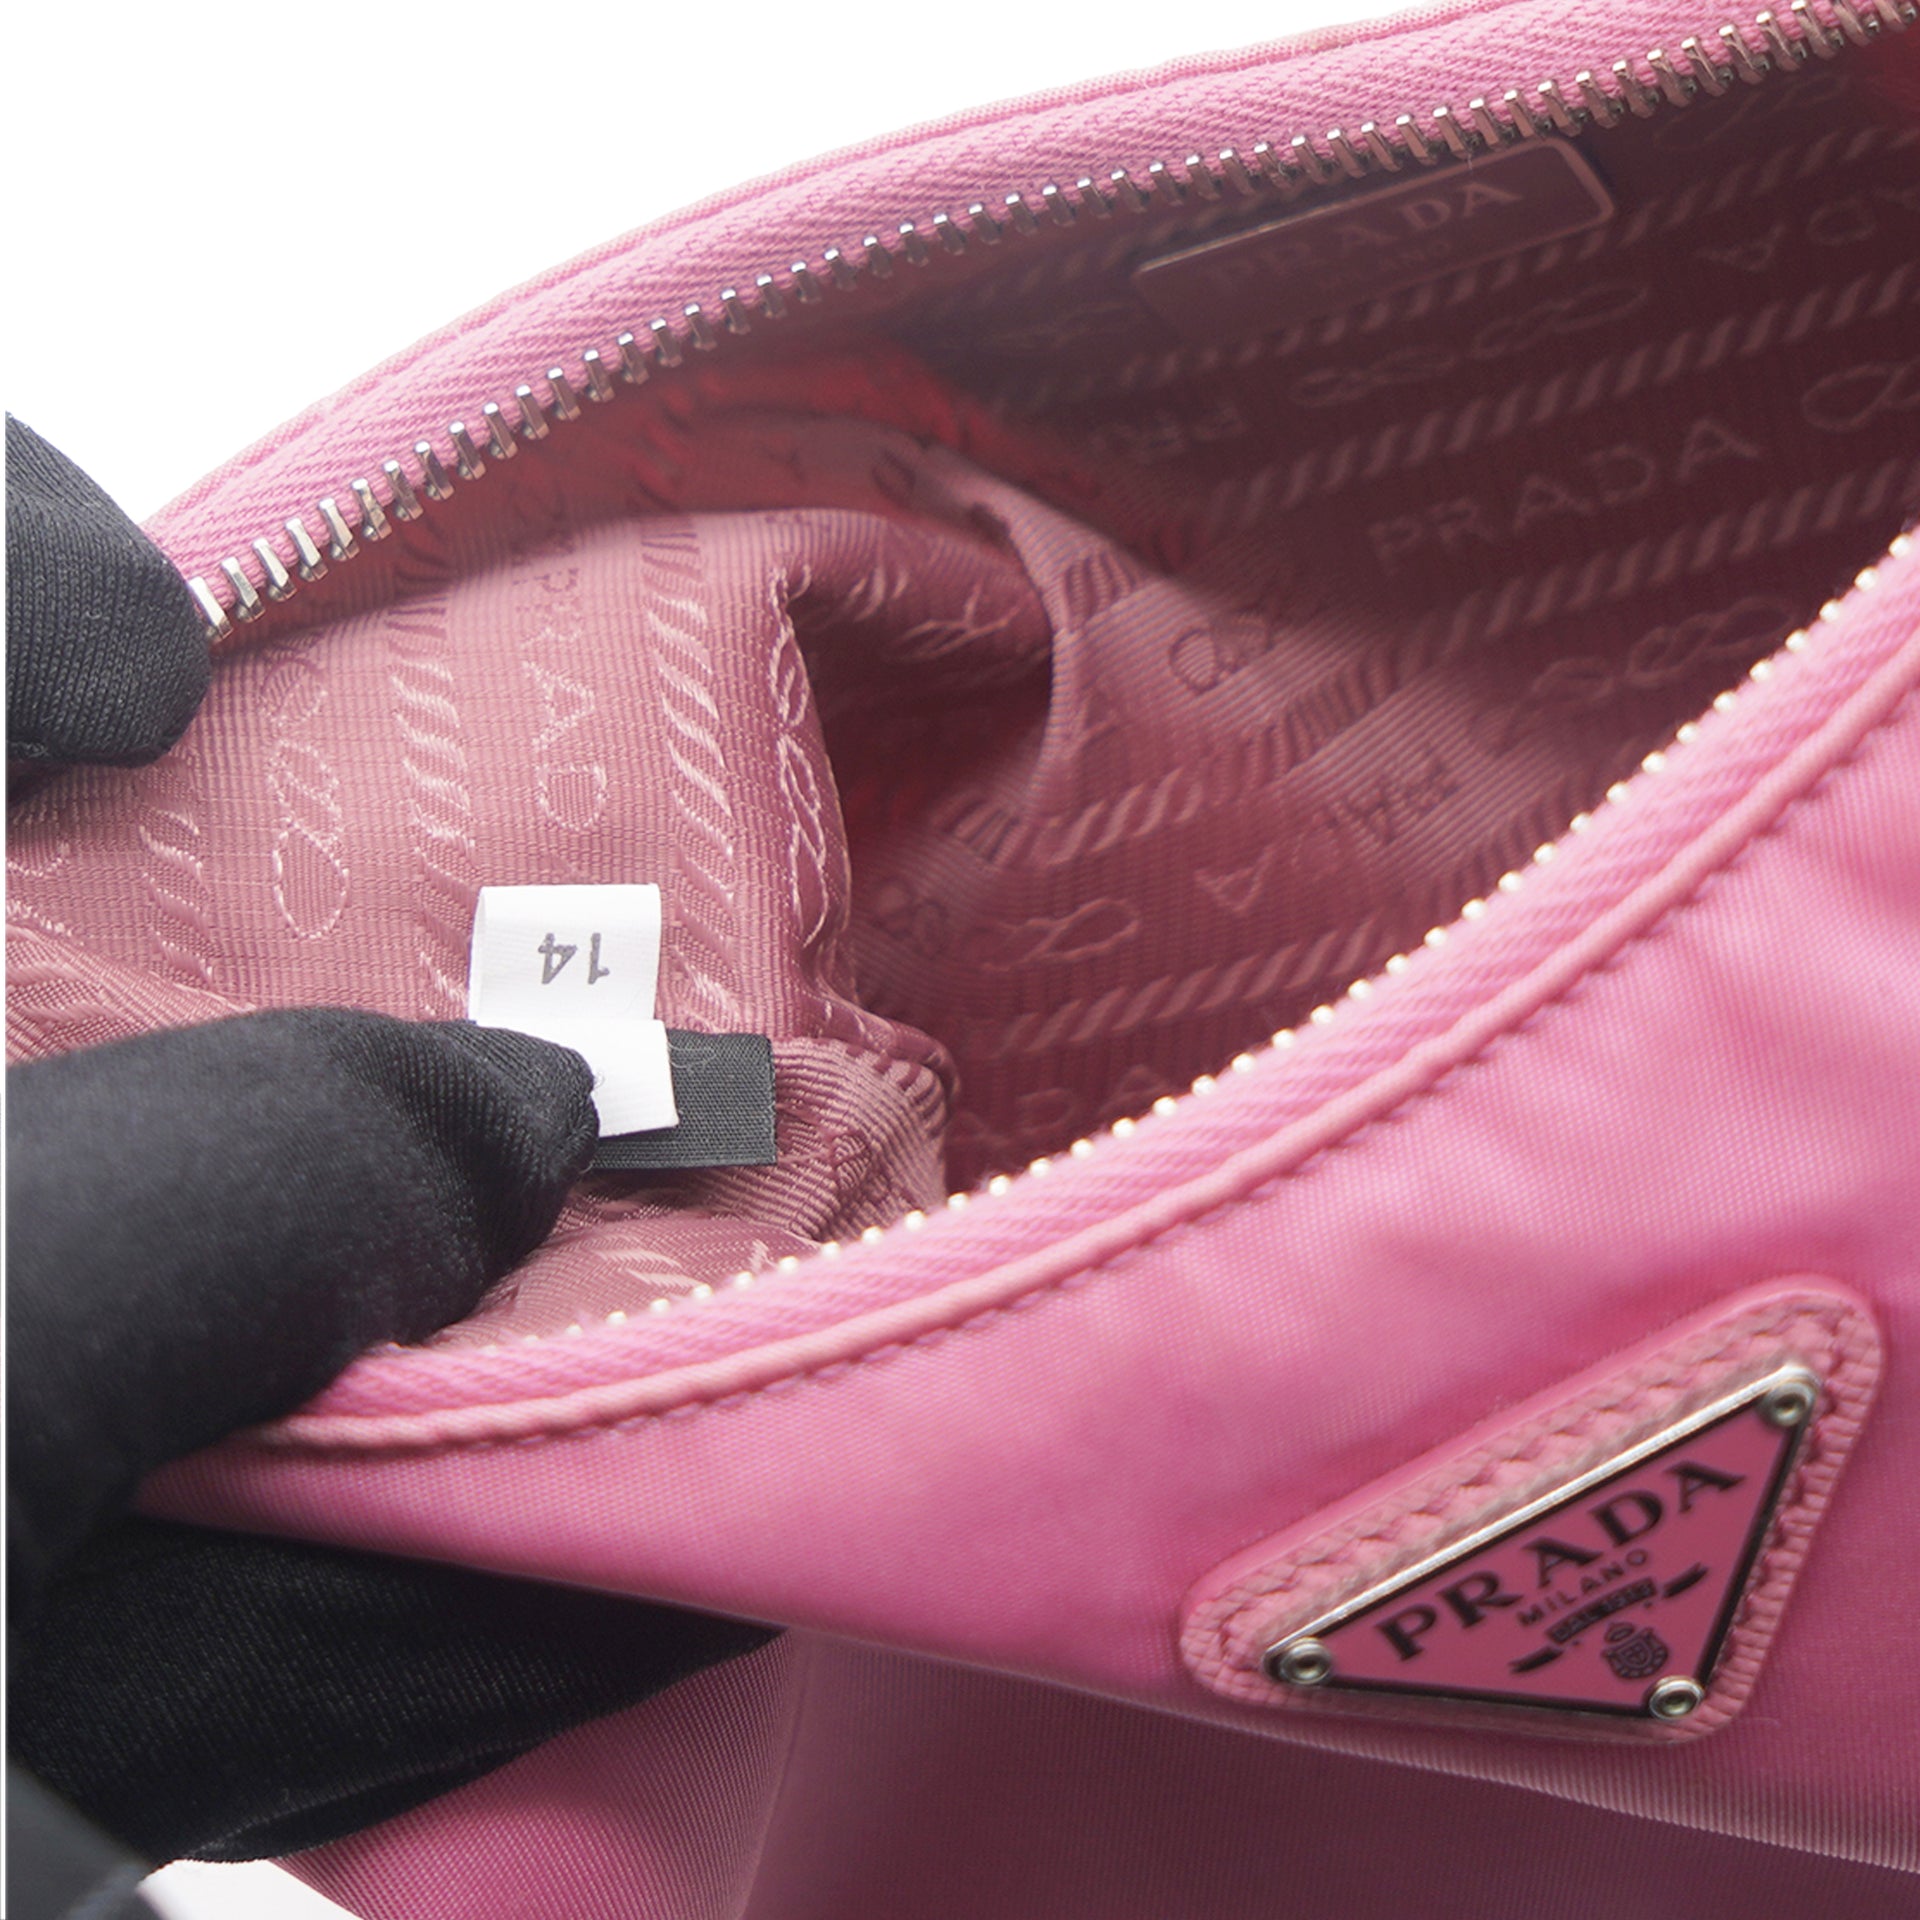 Prada, Bags, Prada Pink Calfskin Chain Flap Bag